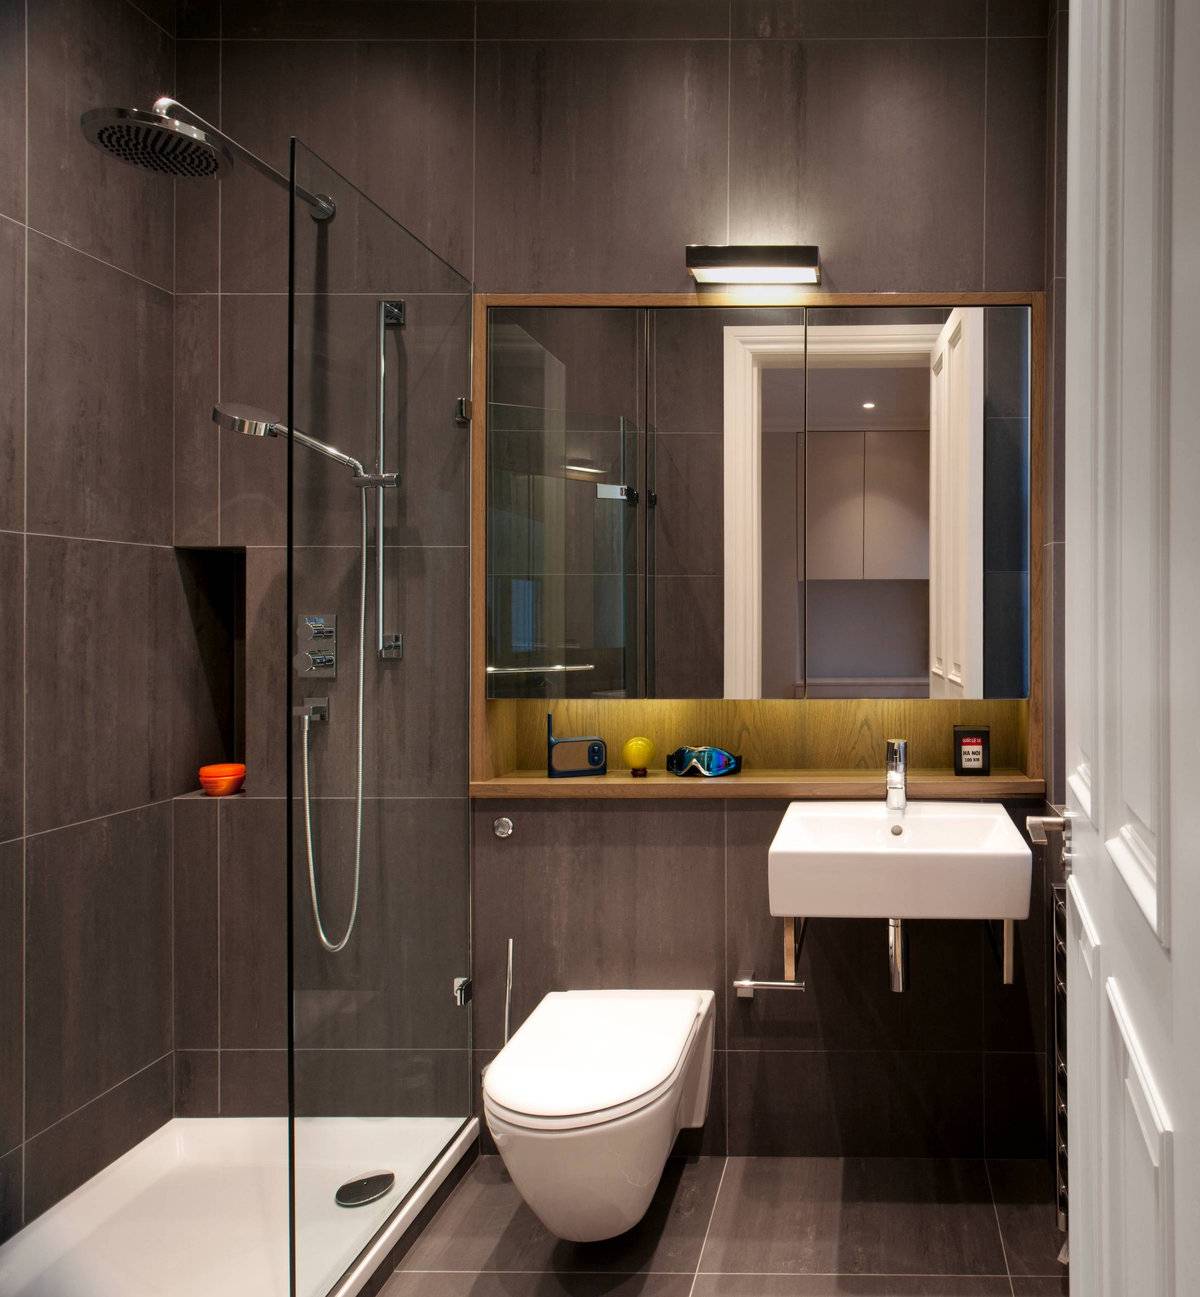 Ремонт в ванной комнате совмещенной с туалетом: фото инструкция | онлайн-журнал о ремонте и дизайне